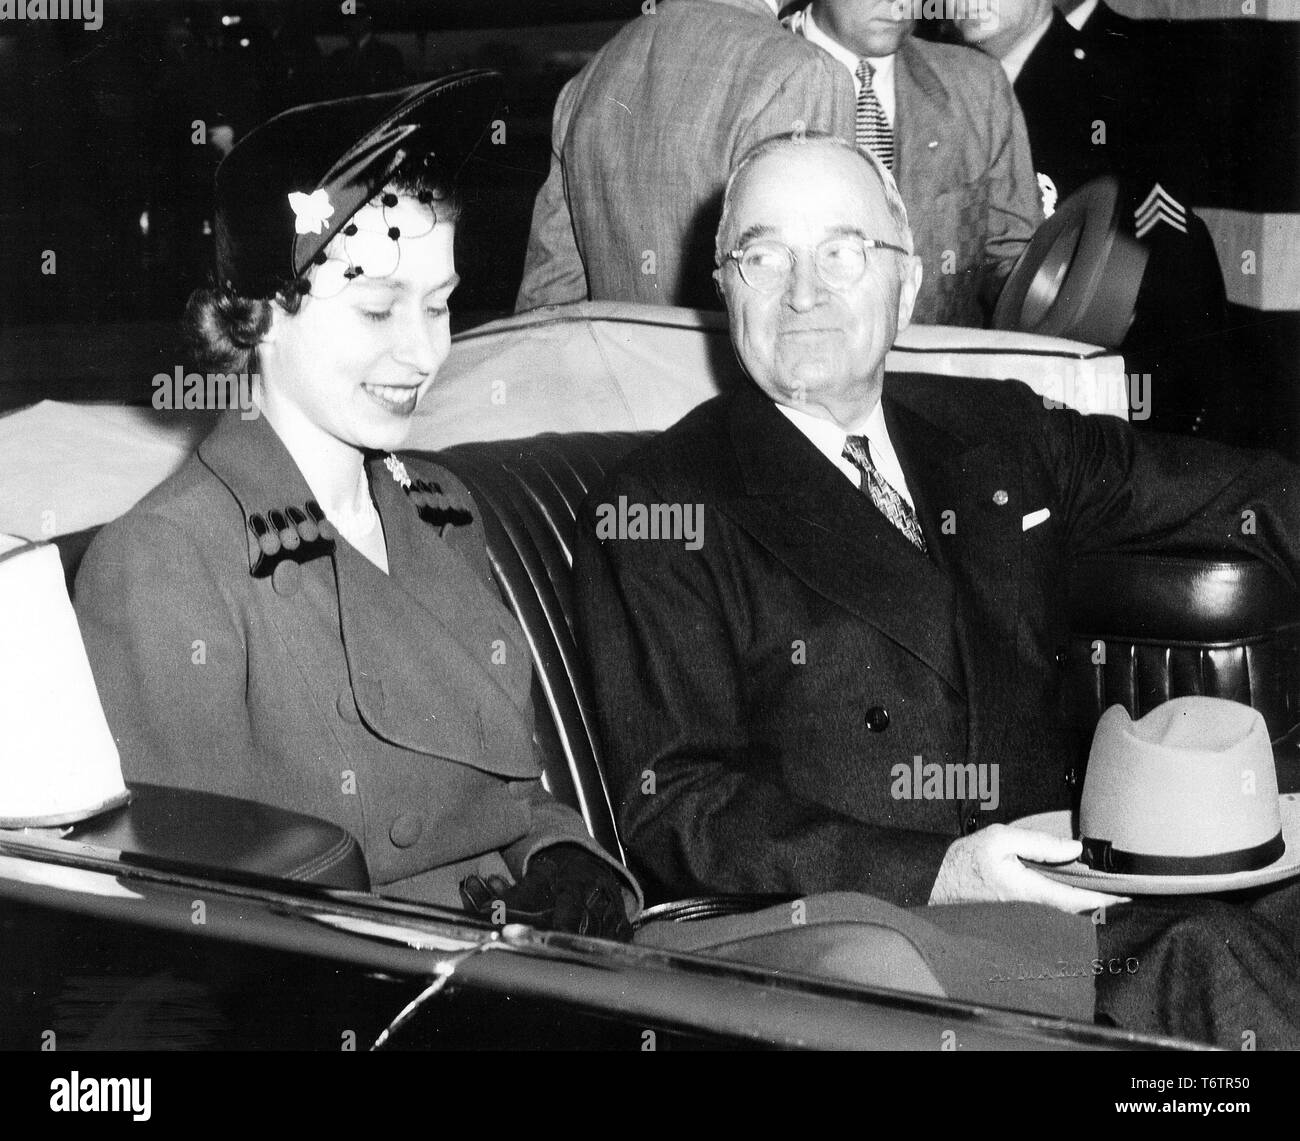 Il presidente americano Harry Truman e Elizabeth II, seduto accanto a ogni altro nel retro del Lincoln cosmopolita stato presidenziale auto, con la capote aperta, Washington, DC, Ottobre 31, 1951. Immagine cortesia archivi nazionali. () Foto Stock